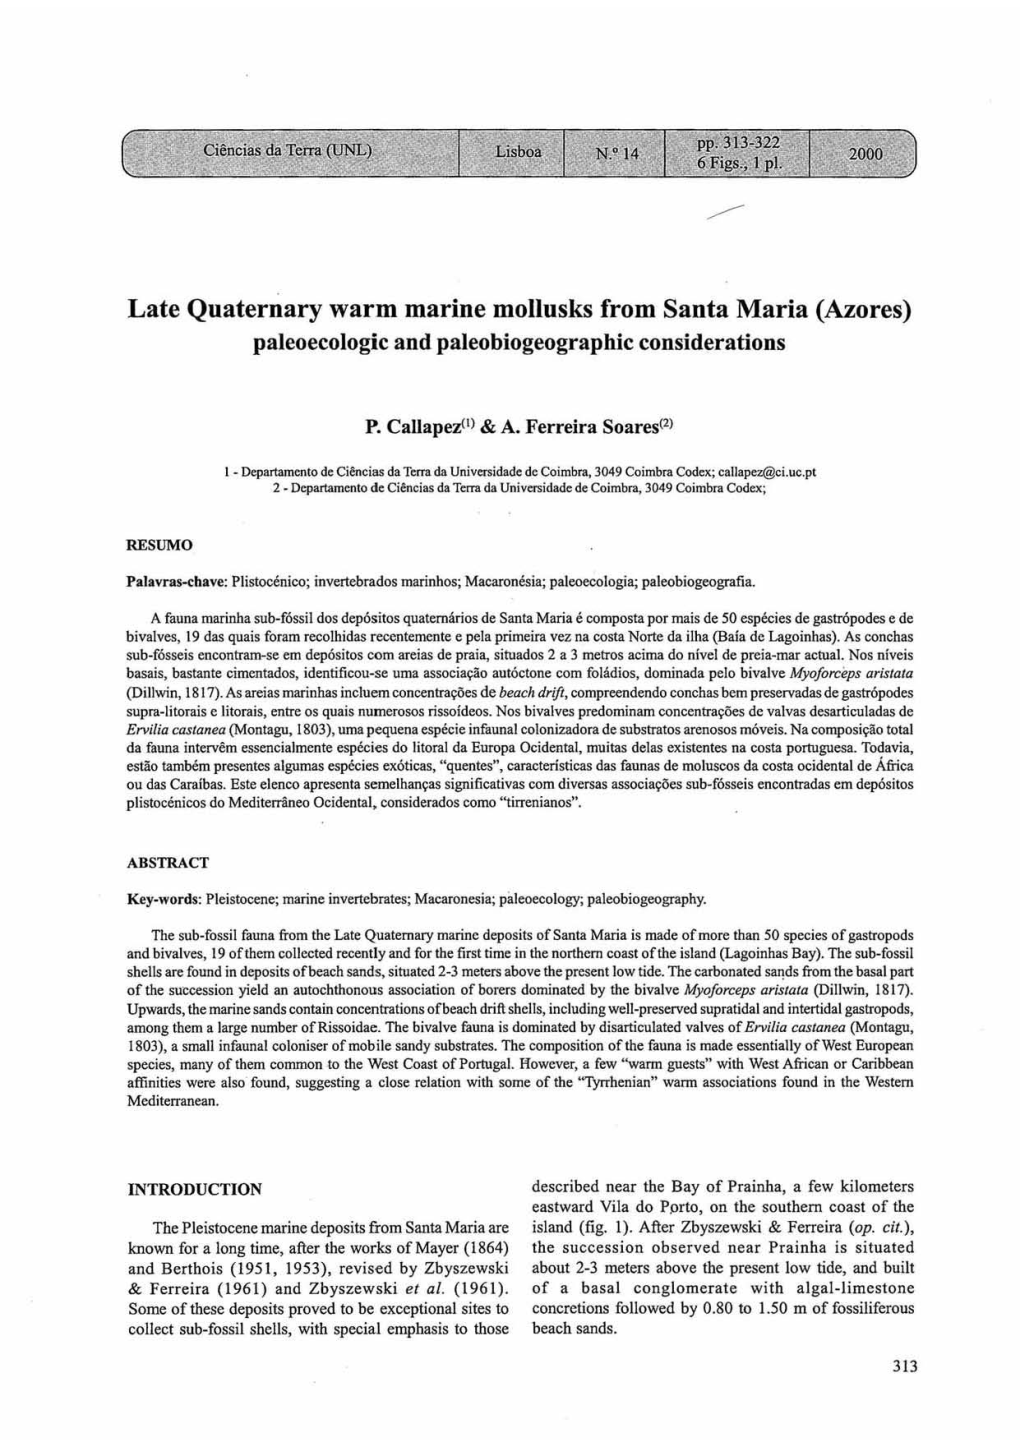 Late Quaternary Warm Marine Mollusks from Santa Maria (Azores) Pajeoecojogic and Pajeobiogeographic Considerations